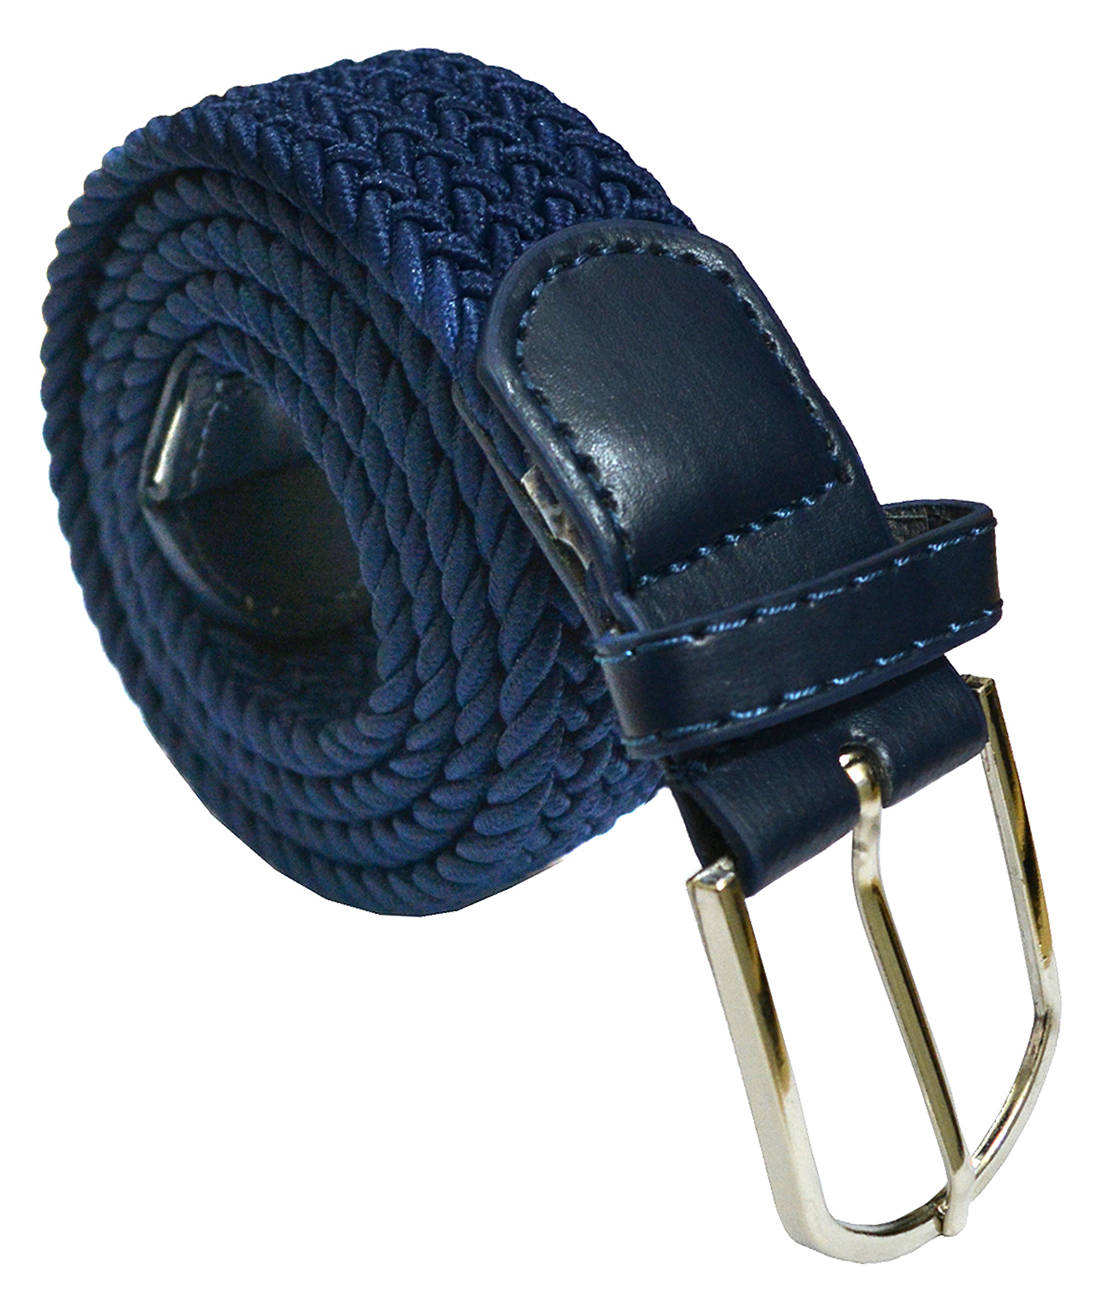 Buy Sunshopping Men's Navy Blue Casual Elastic Stretchable Stylish Belt ...